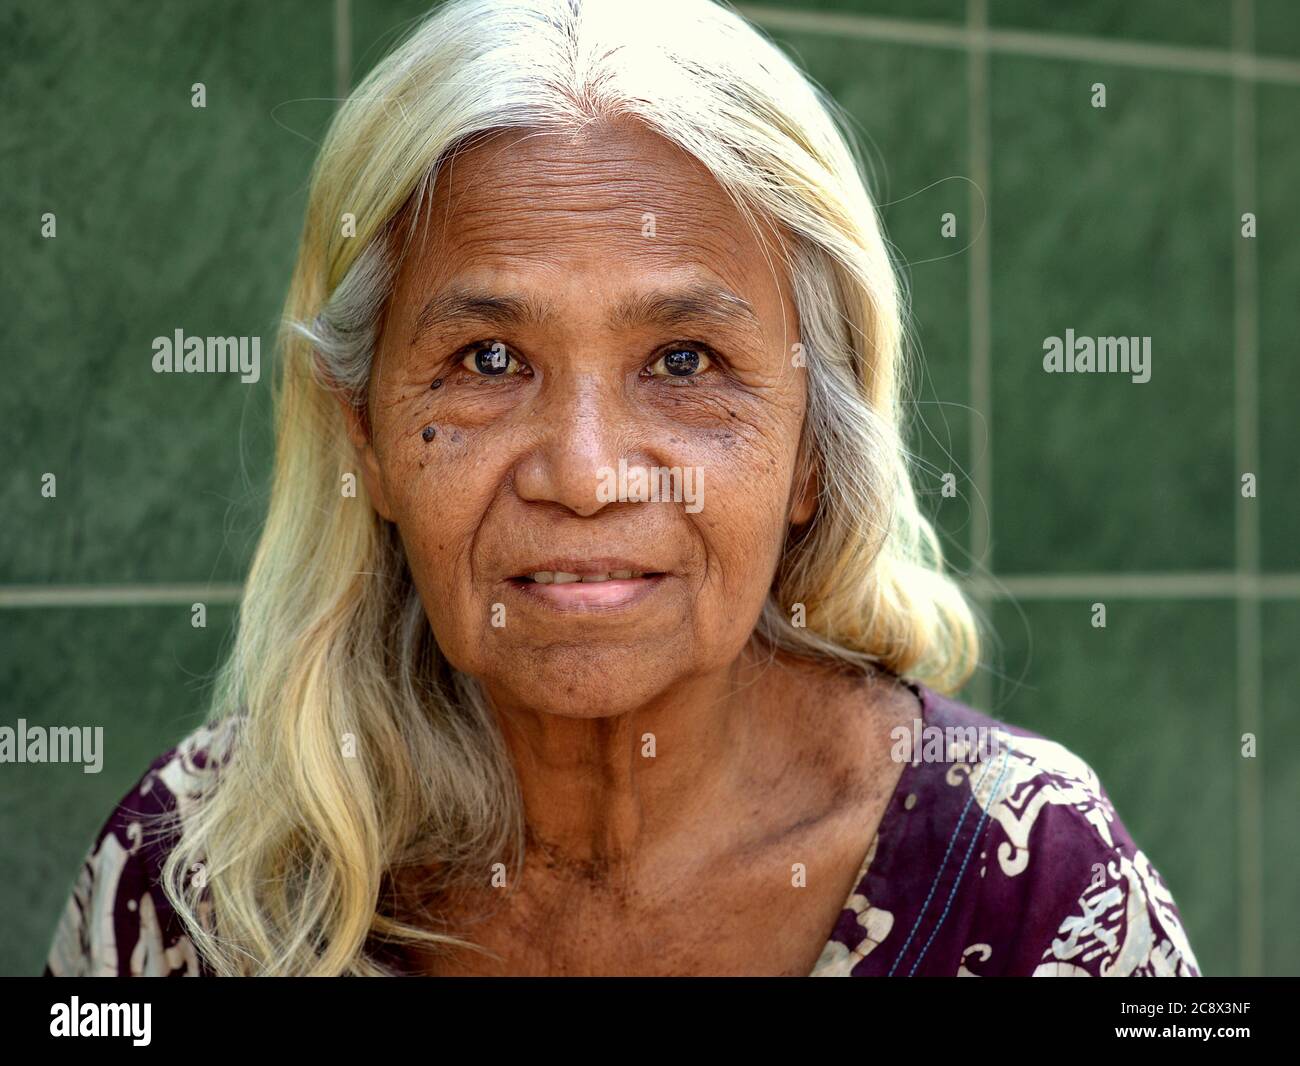 Mujer birmana de edad avanzada con pelo largo hermoso posan para la cámara. Foto de stock